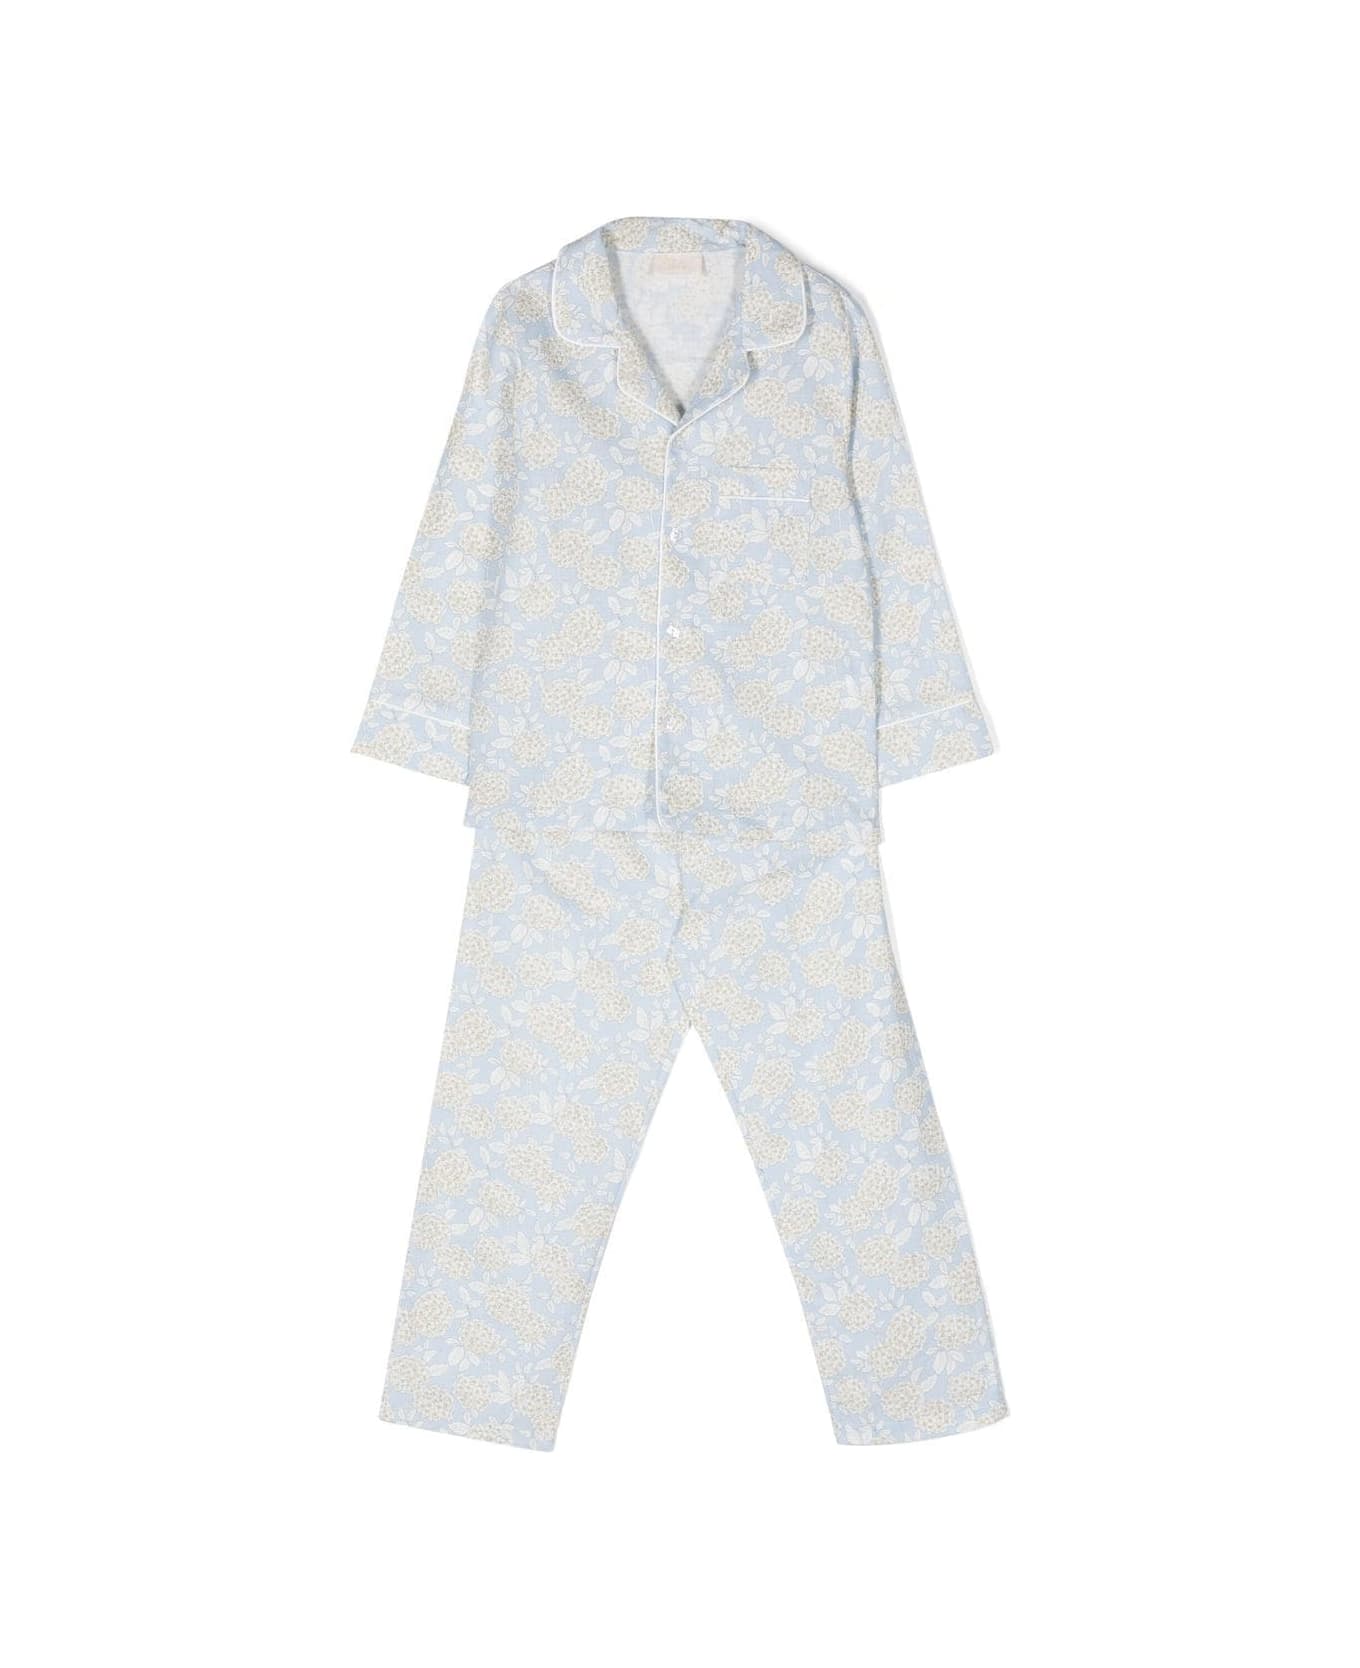 Story Loris Long Sleeve Pajamas - Light blue